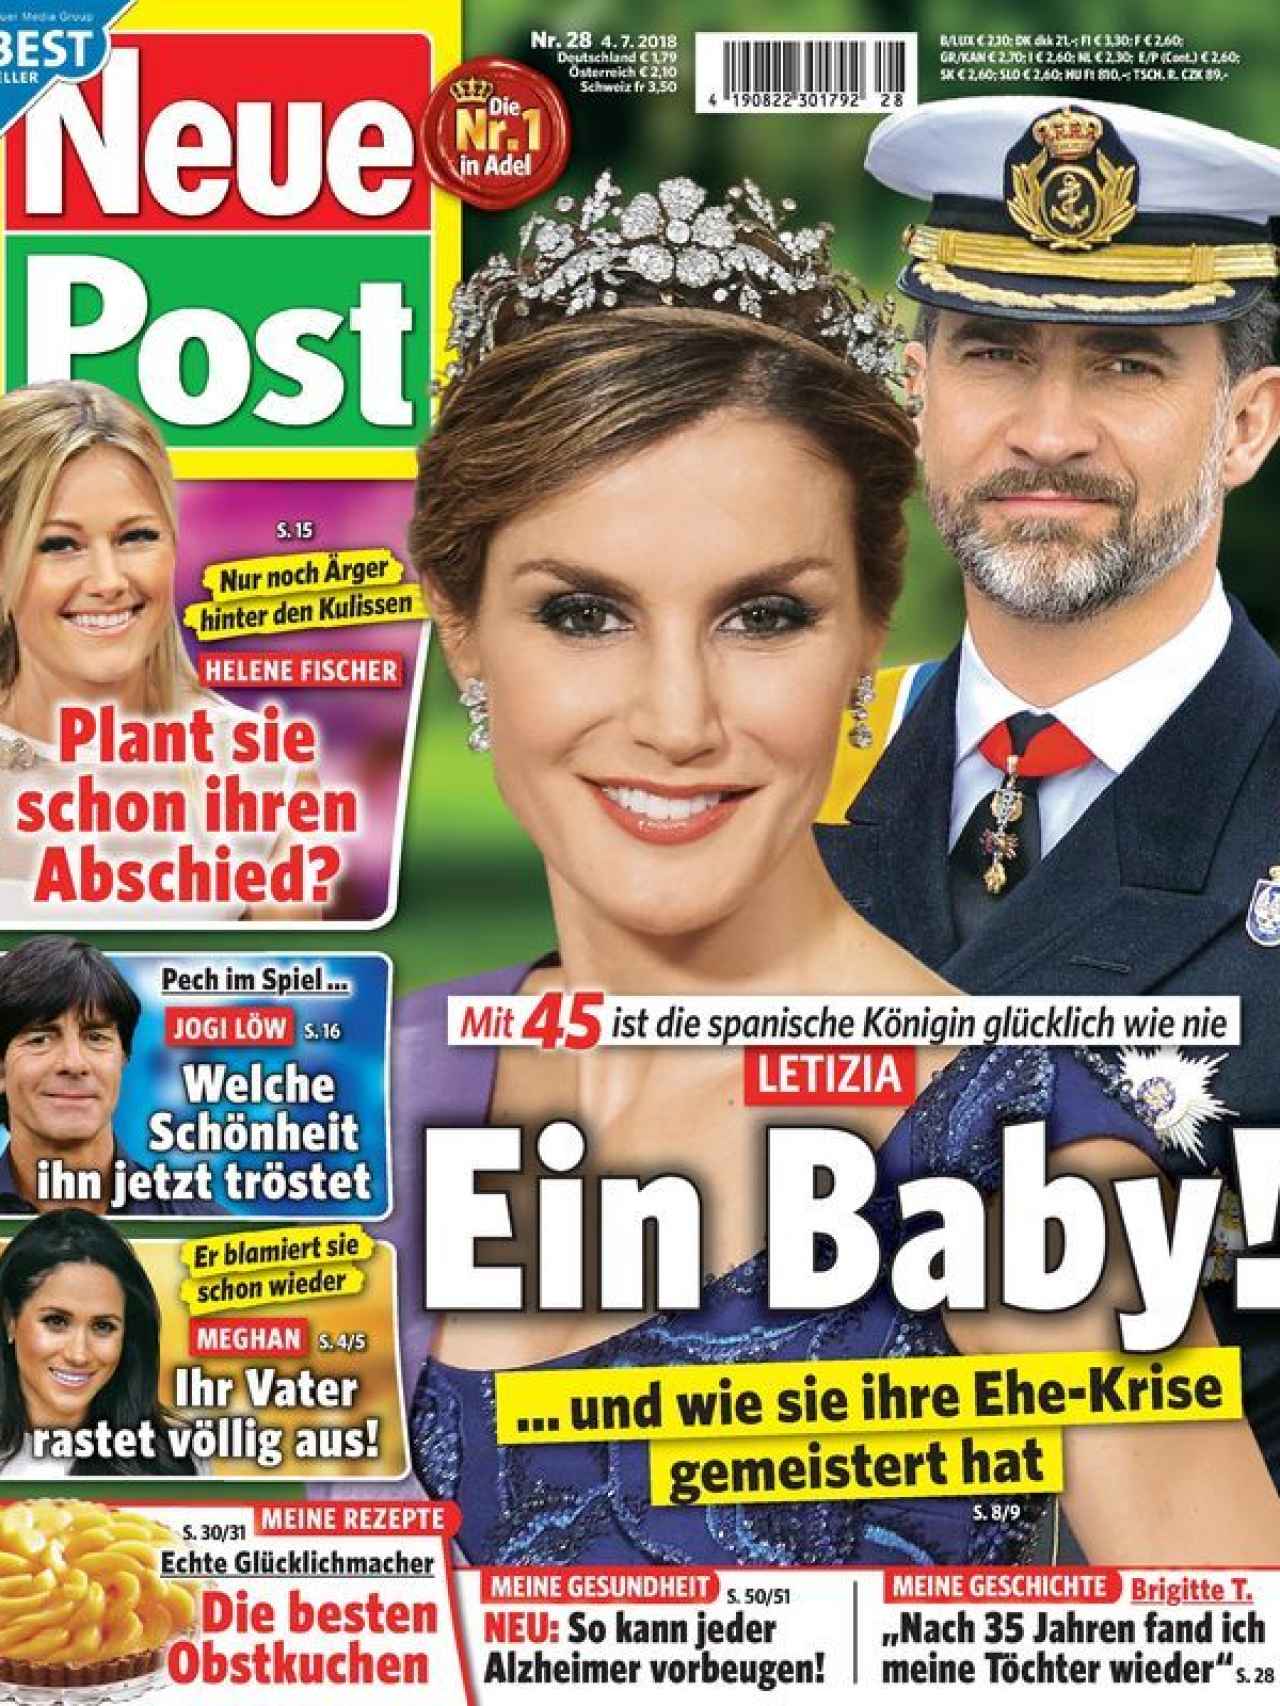 Los Reyes de España en la portada de 'Neue Post' que afirma que Letizia está embarazada.